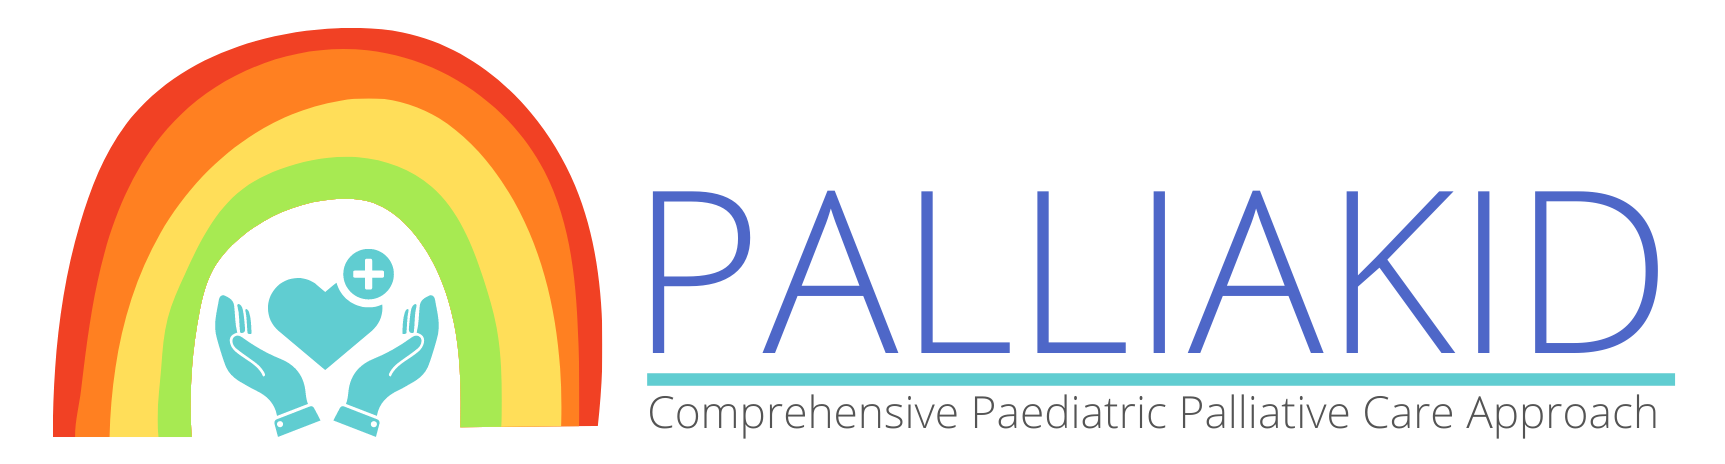 palliakid-icon-logo-slogan-without-background